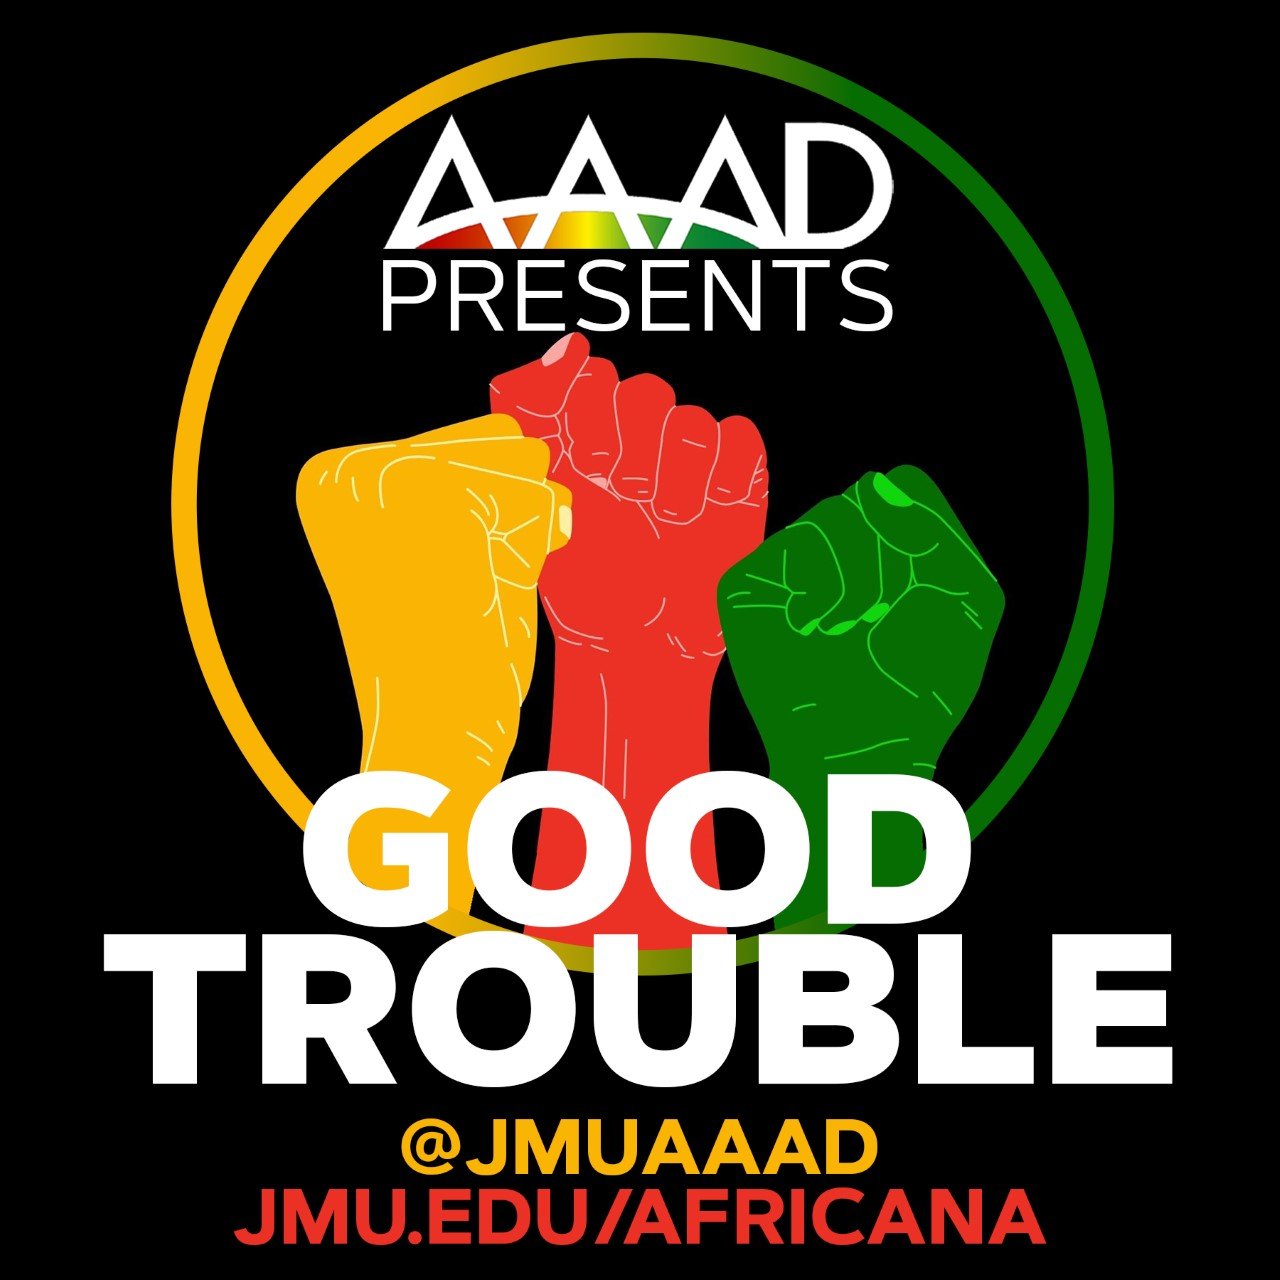 aaad-presents-good-trouble-logo